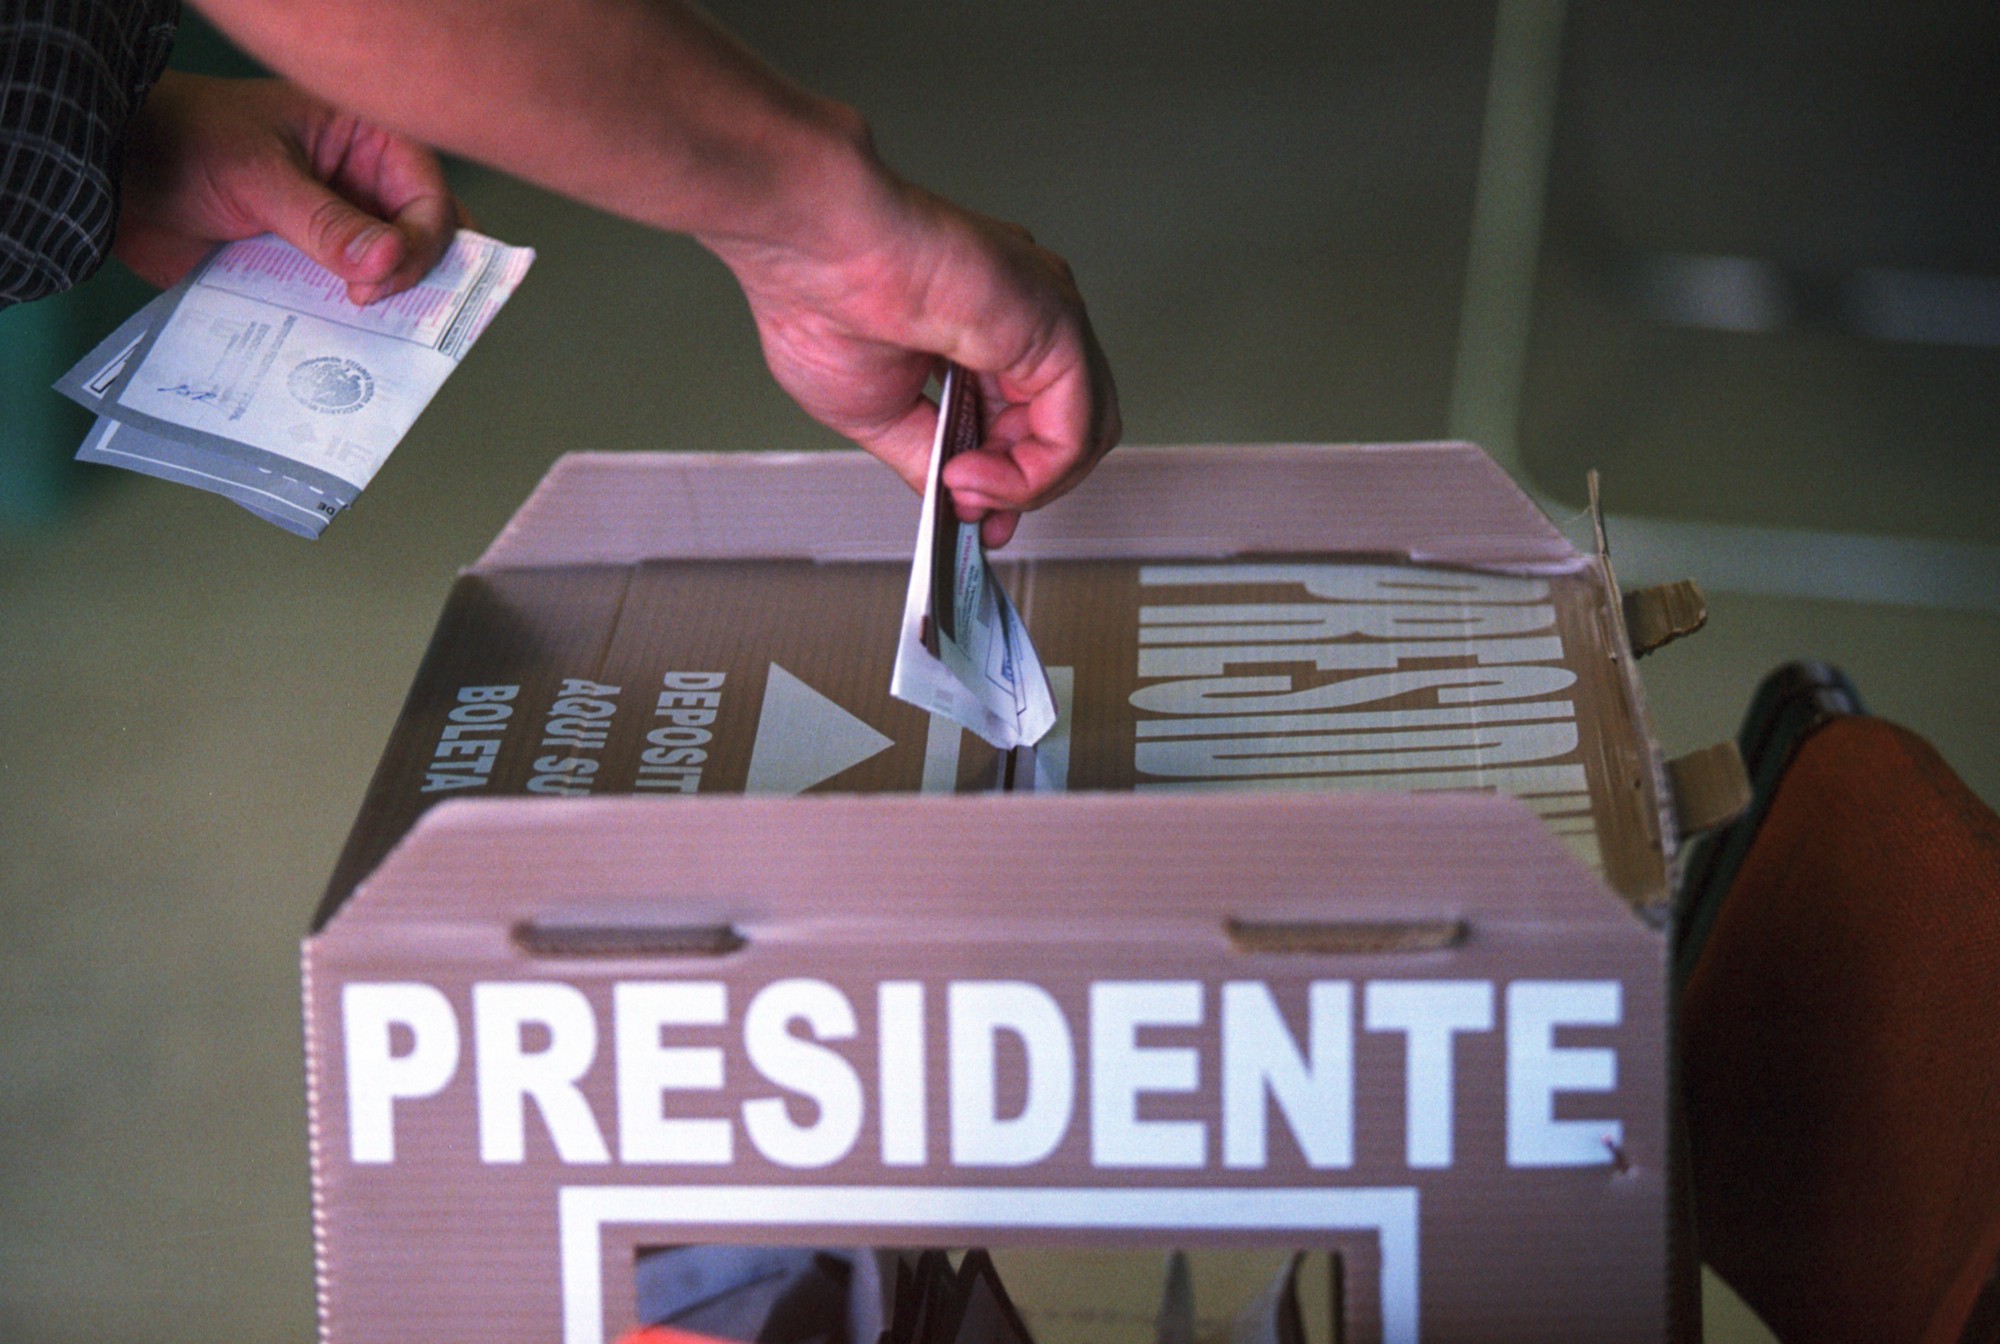 Elecciones presidenciales 2012